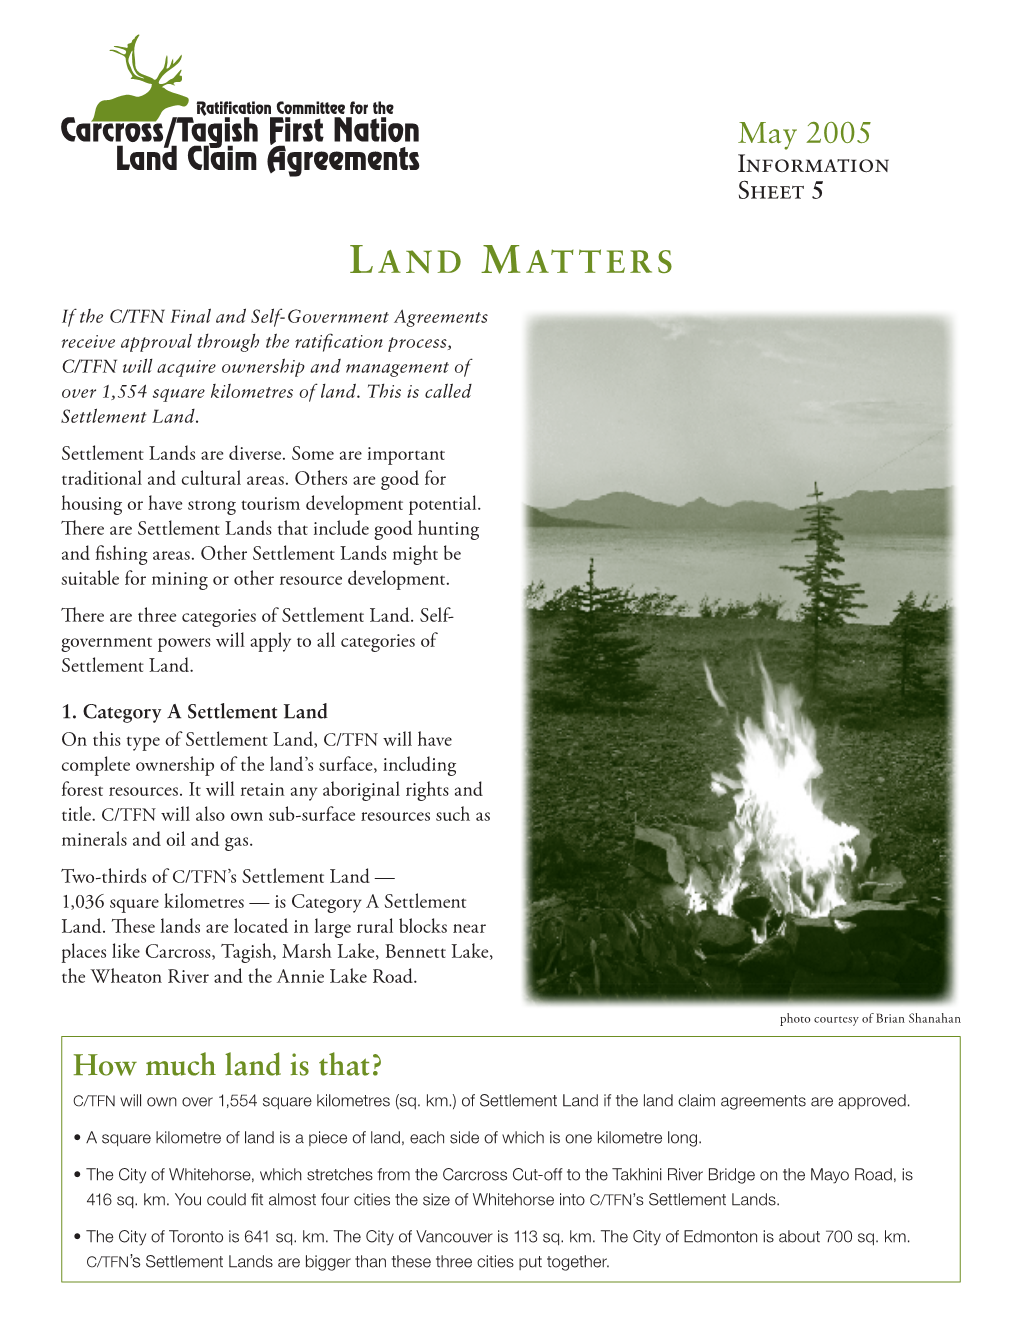 Land Matters